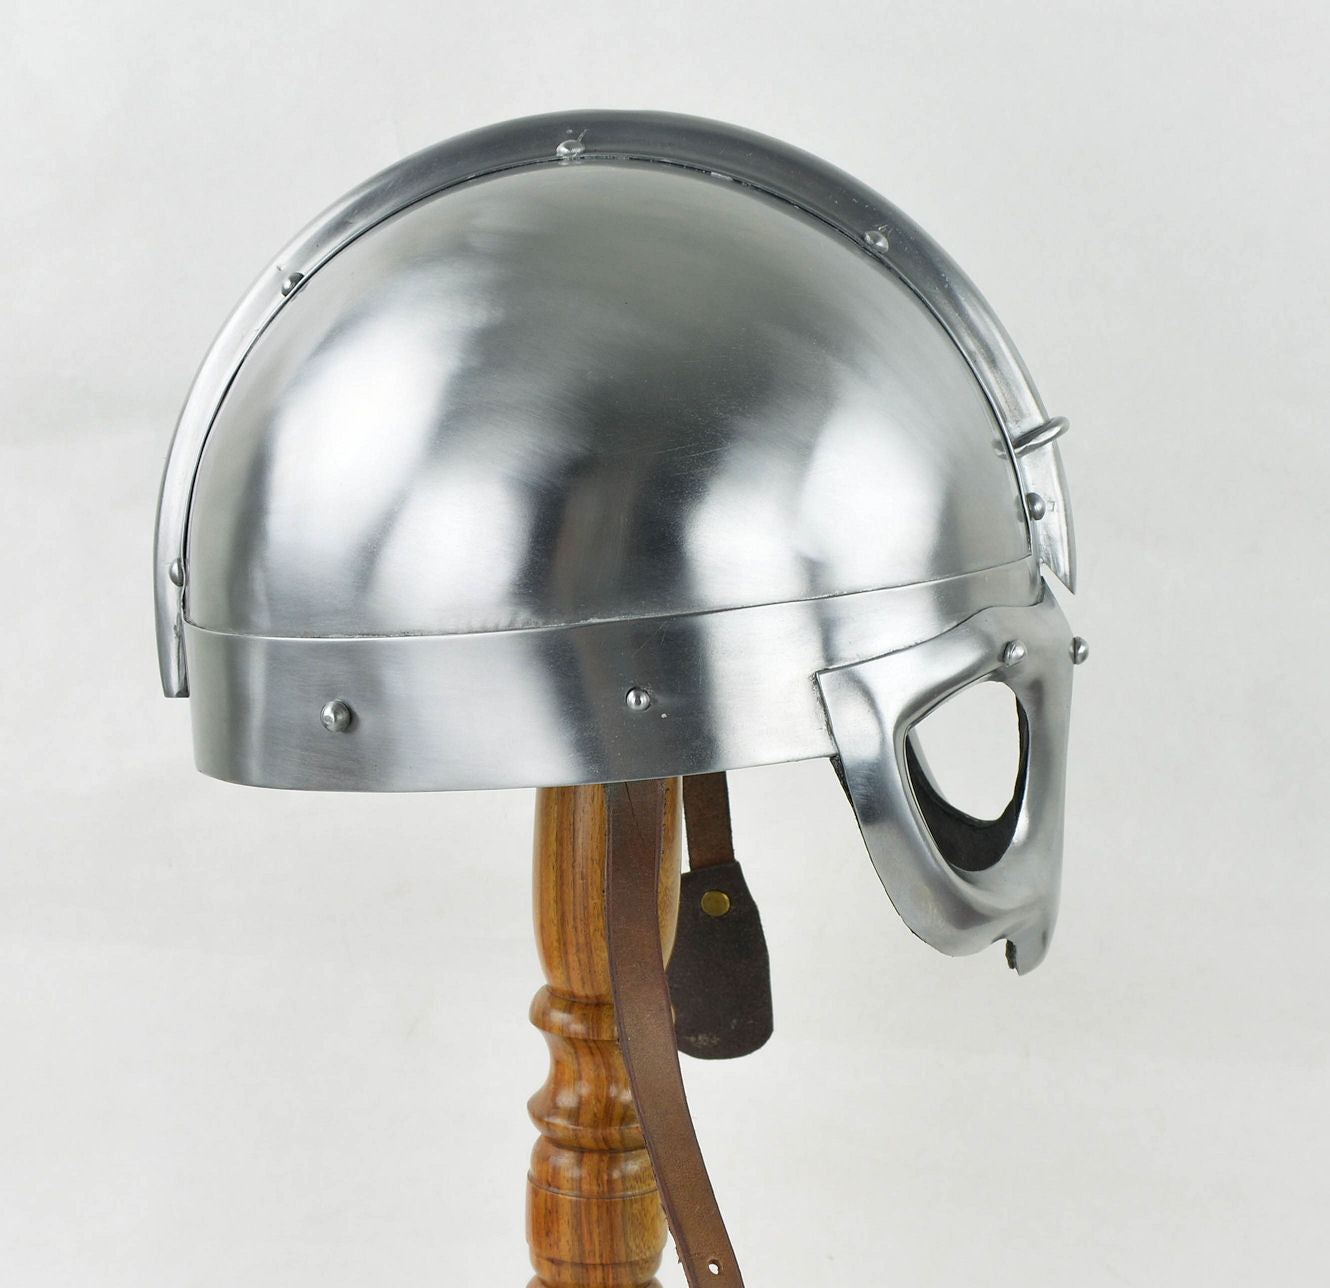 Viking Spectacle Helm - 16 Gauge Steel